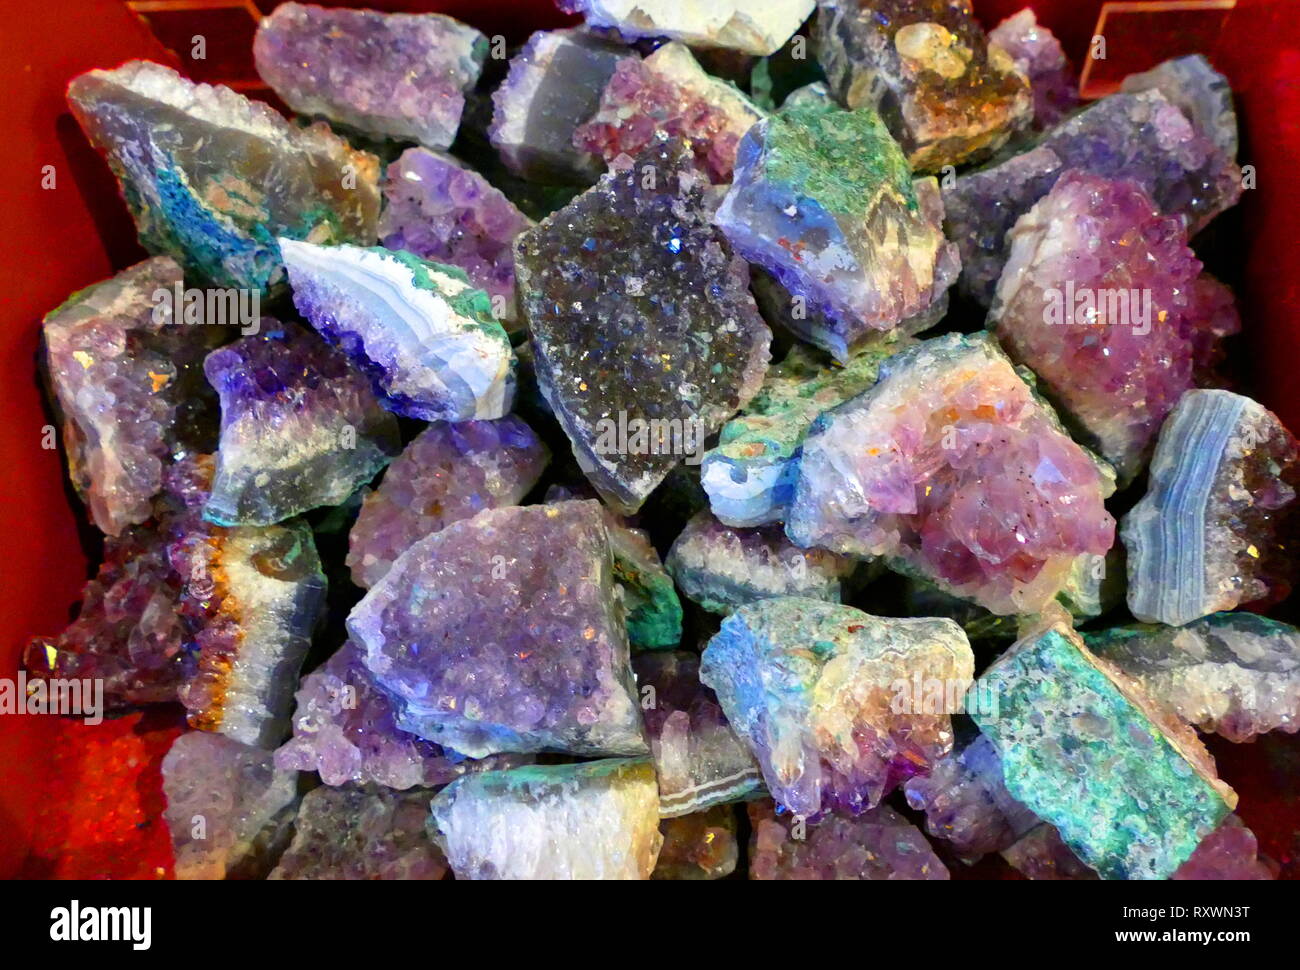 L'améthyste est une variété de quartz violet. Les Grecs anciens portaient l'améthyste et sculpté récipients à boire d'elle dans la croyance qu'elle permettrait d'éviter l'intoxication. L'améthyste est une pierre semi-précieuse souvent utilisée en joaillerie et est la pierre de naissance traditionnel pour février Banque D'Images